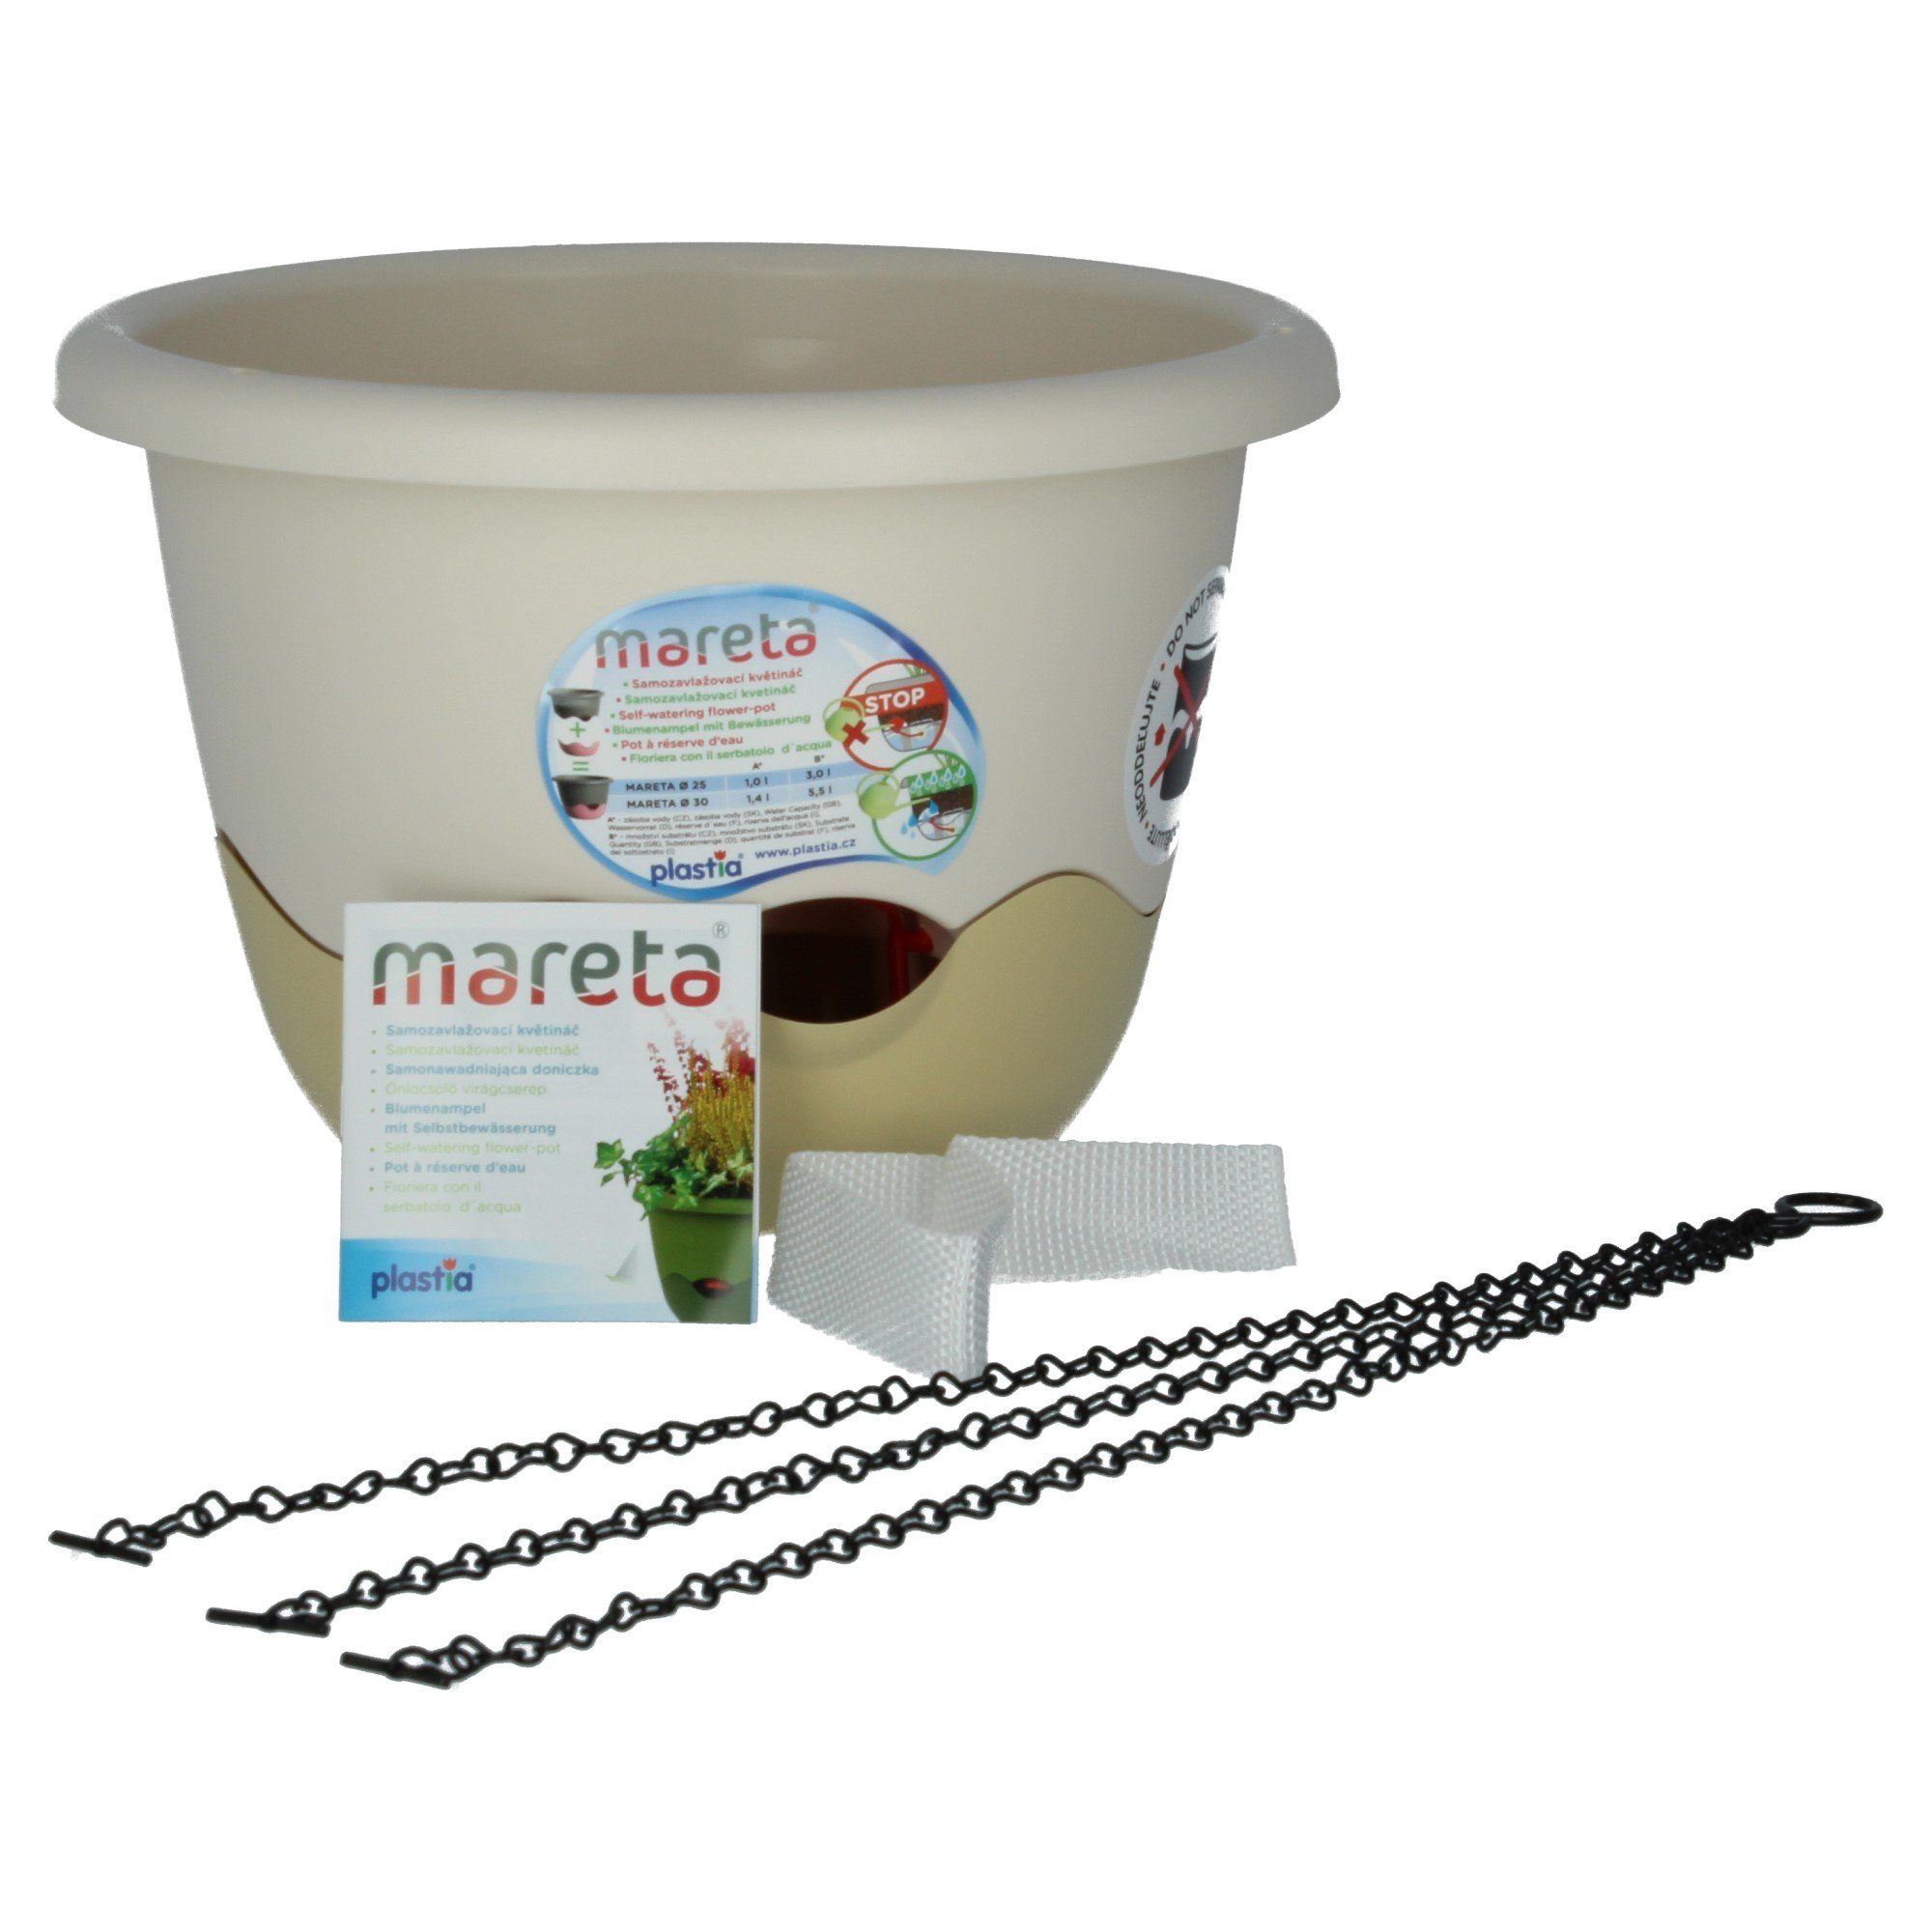 30 weiß Elfenbein mit Blumentopf St) Mareta PLASTIA Erdbewässerung (1